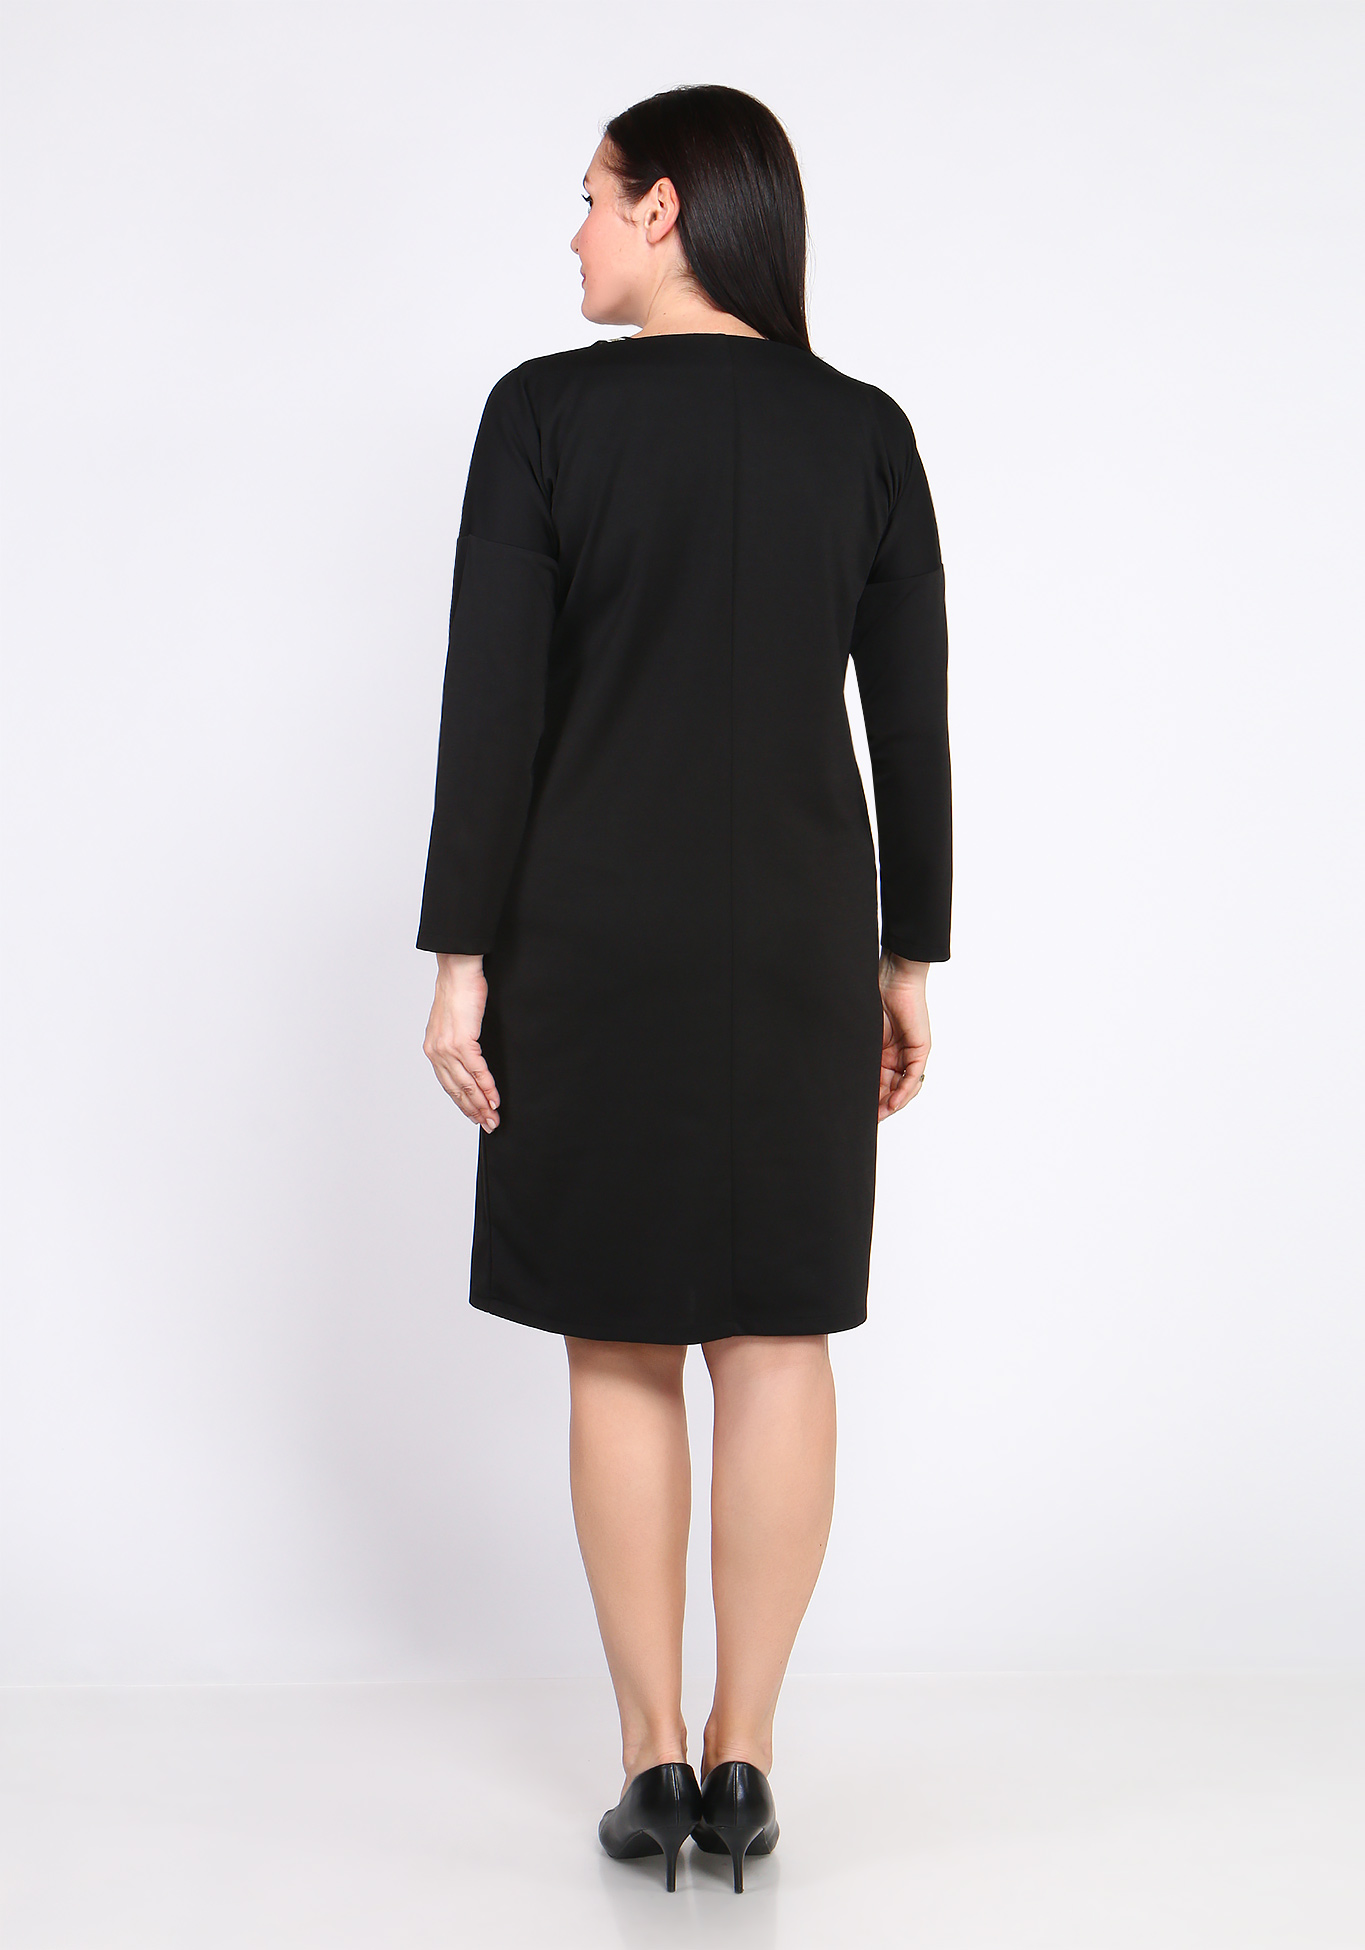 Платье с лампасом Bianka Modeno, размер 48, цвет чёрный - фото 5